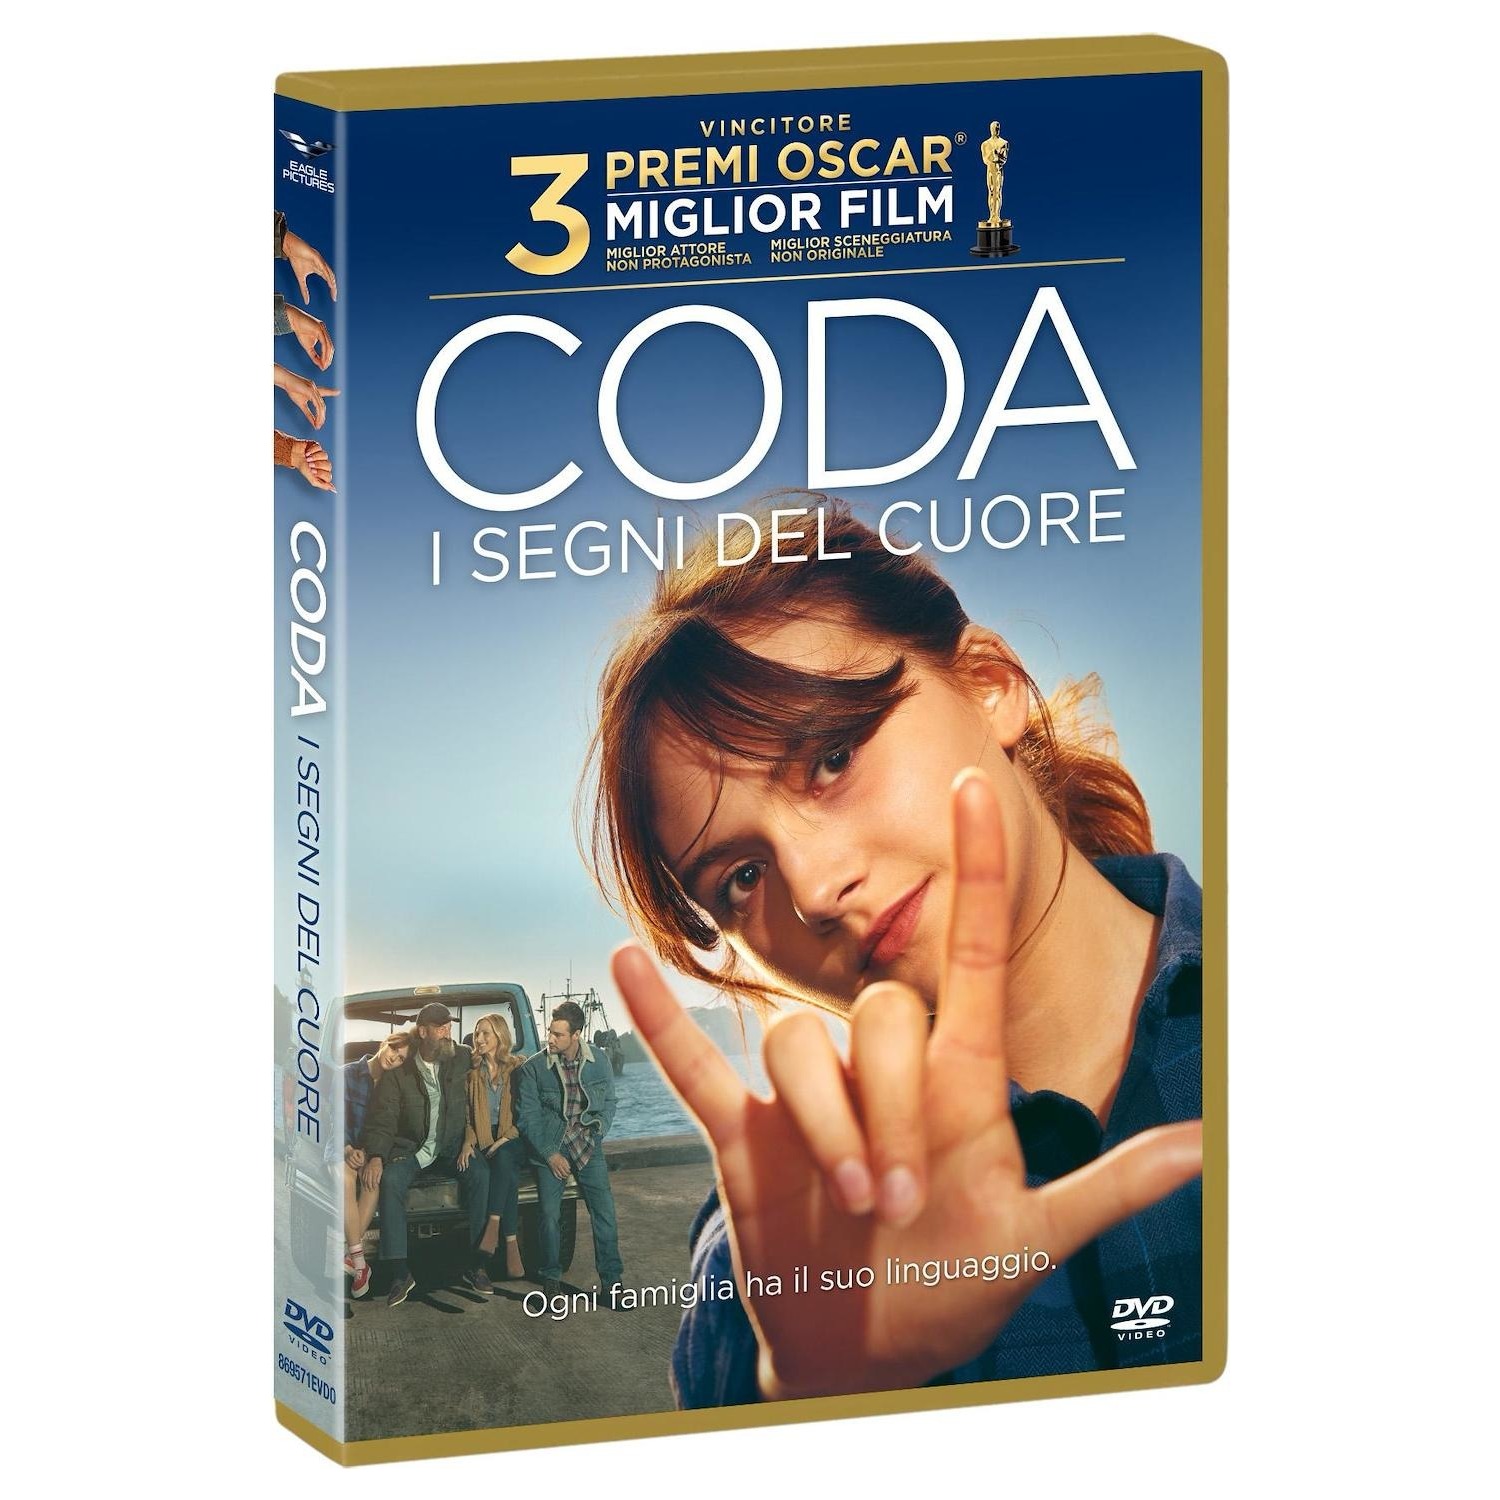 Immagine per DVD Coda - I segni del cuore LE da DIMOStore